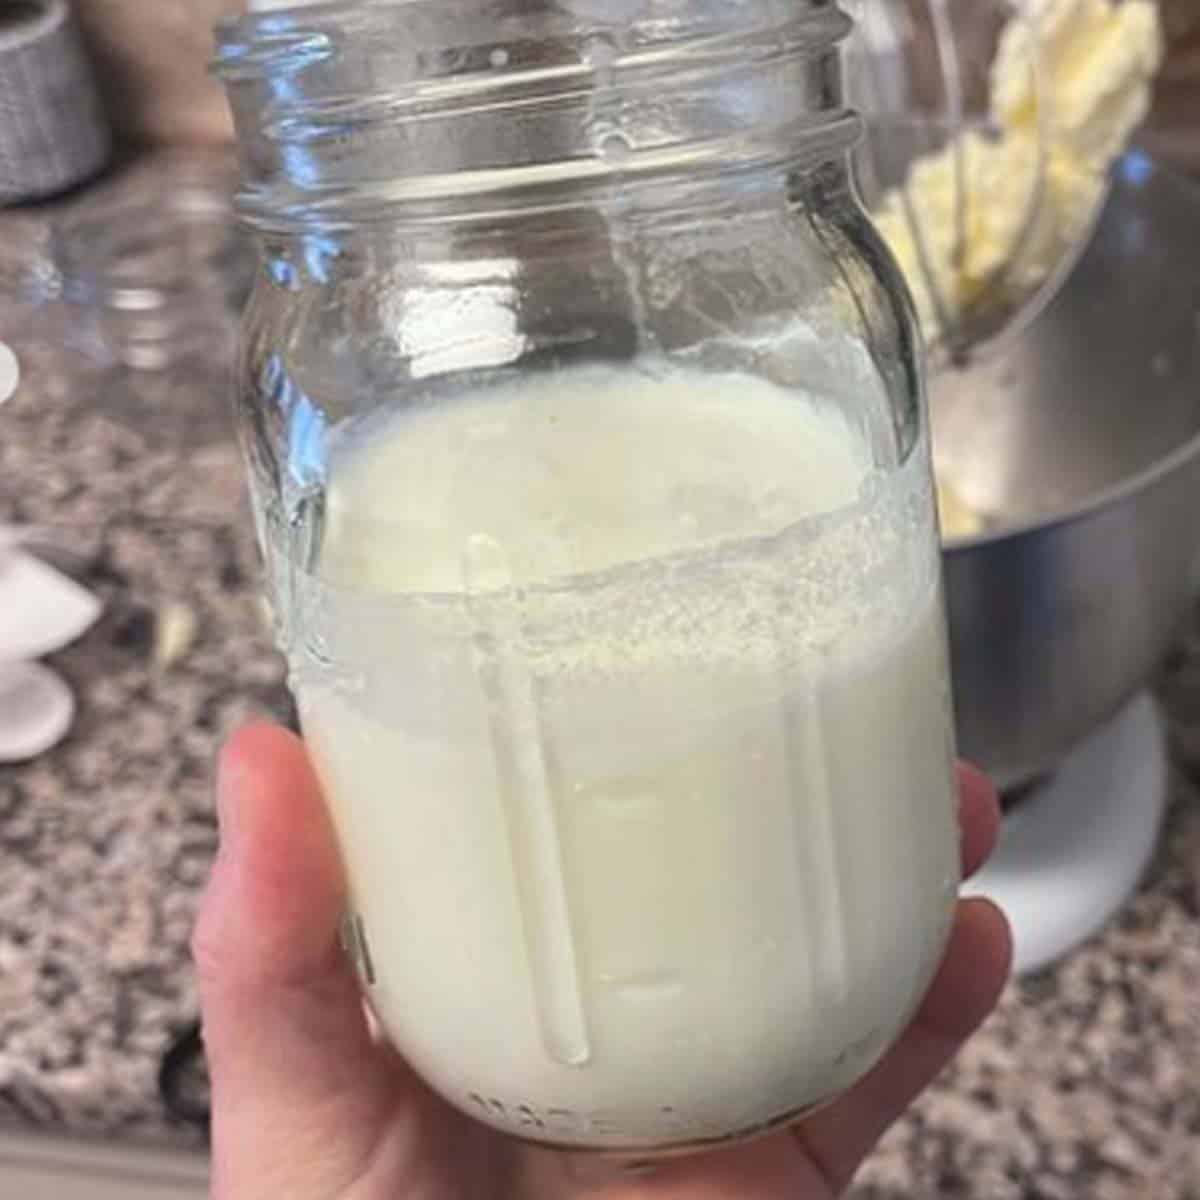 separando o liquido da manteiga caseira